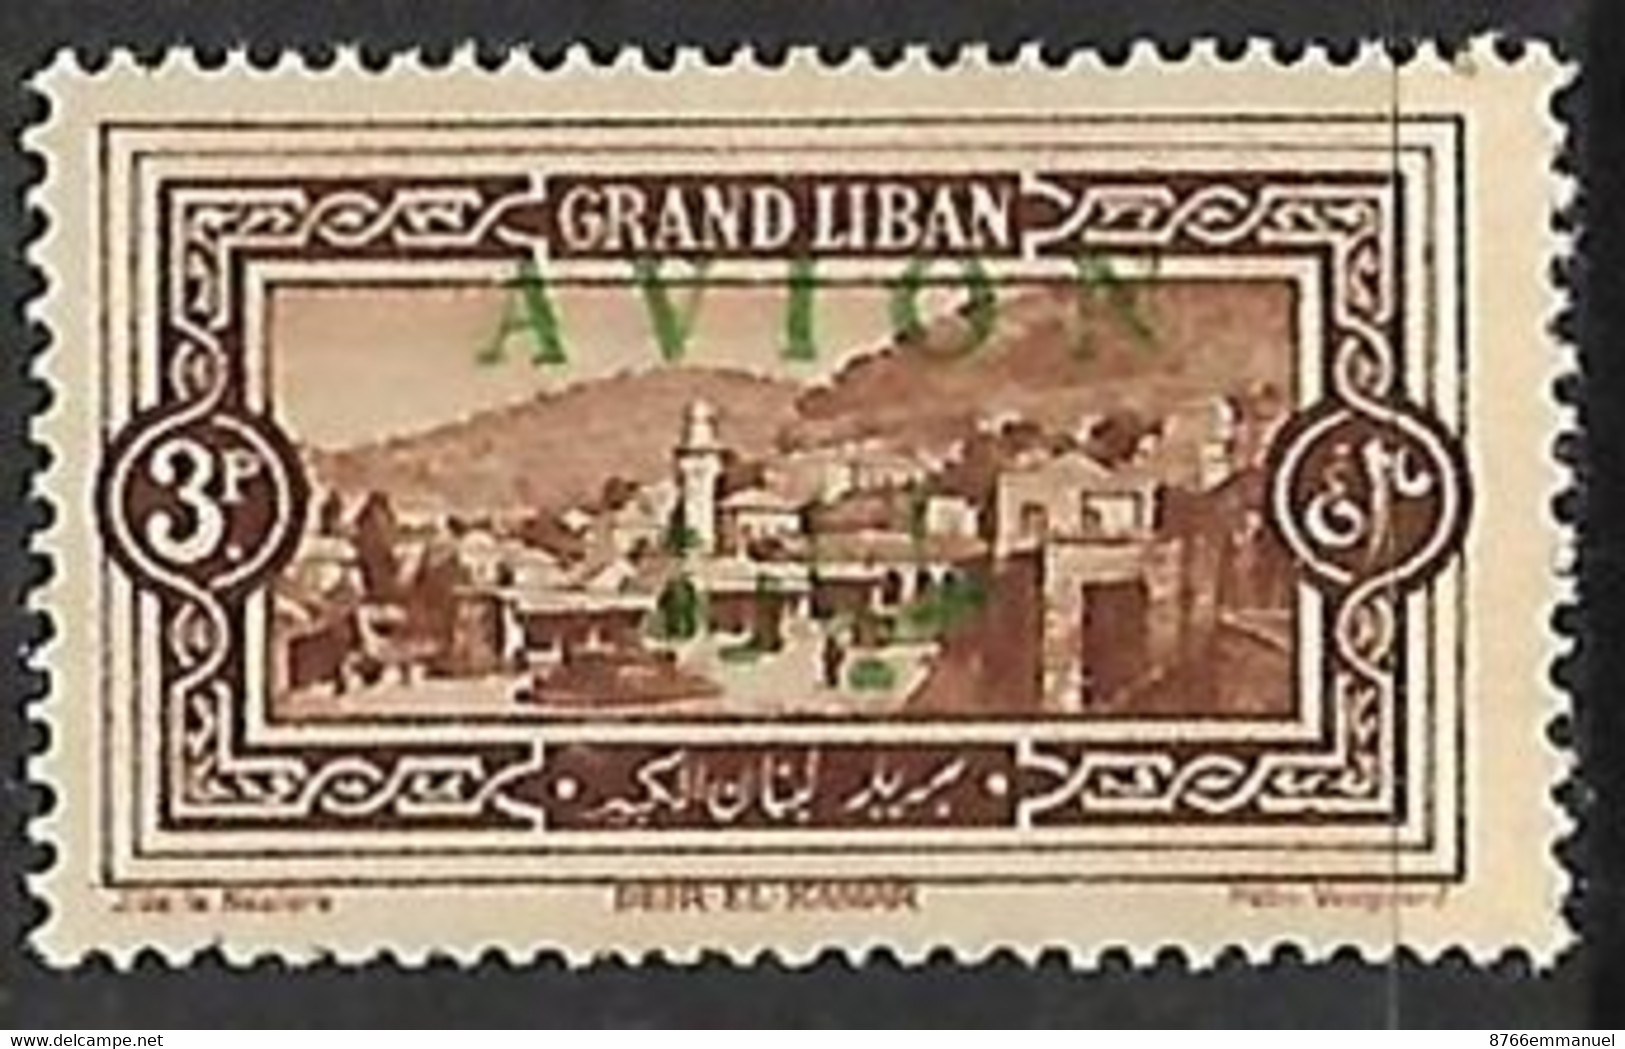 GRAND LIBAN AERIEN N°10 N* - Luftpost